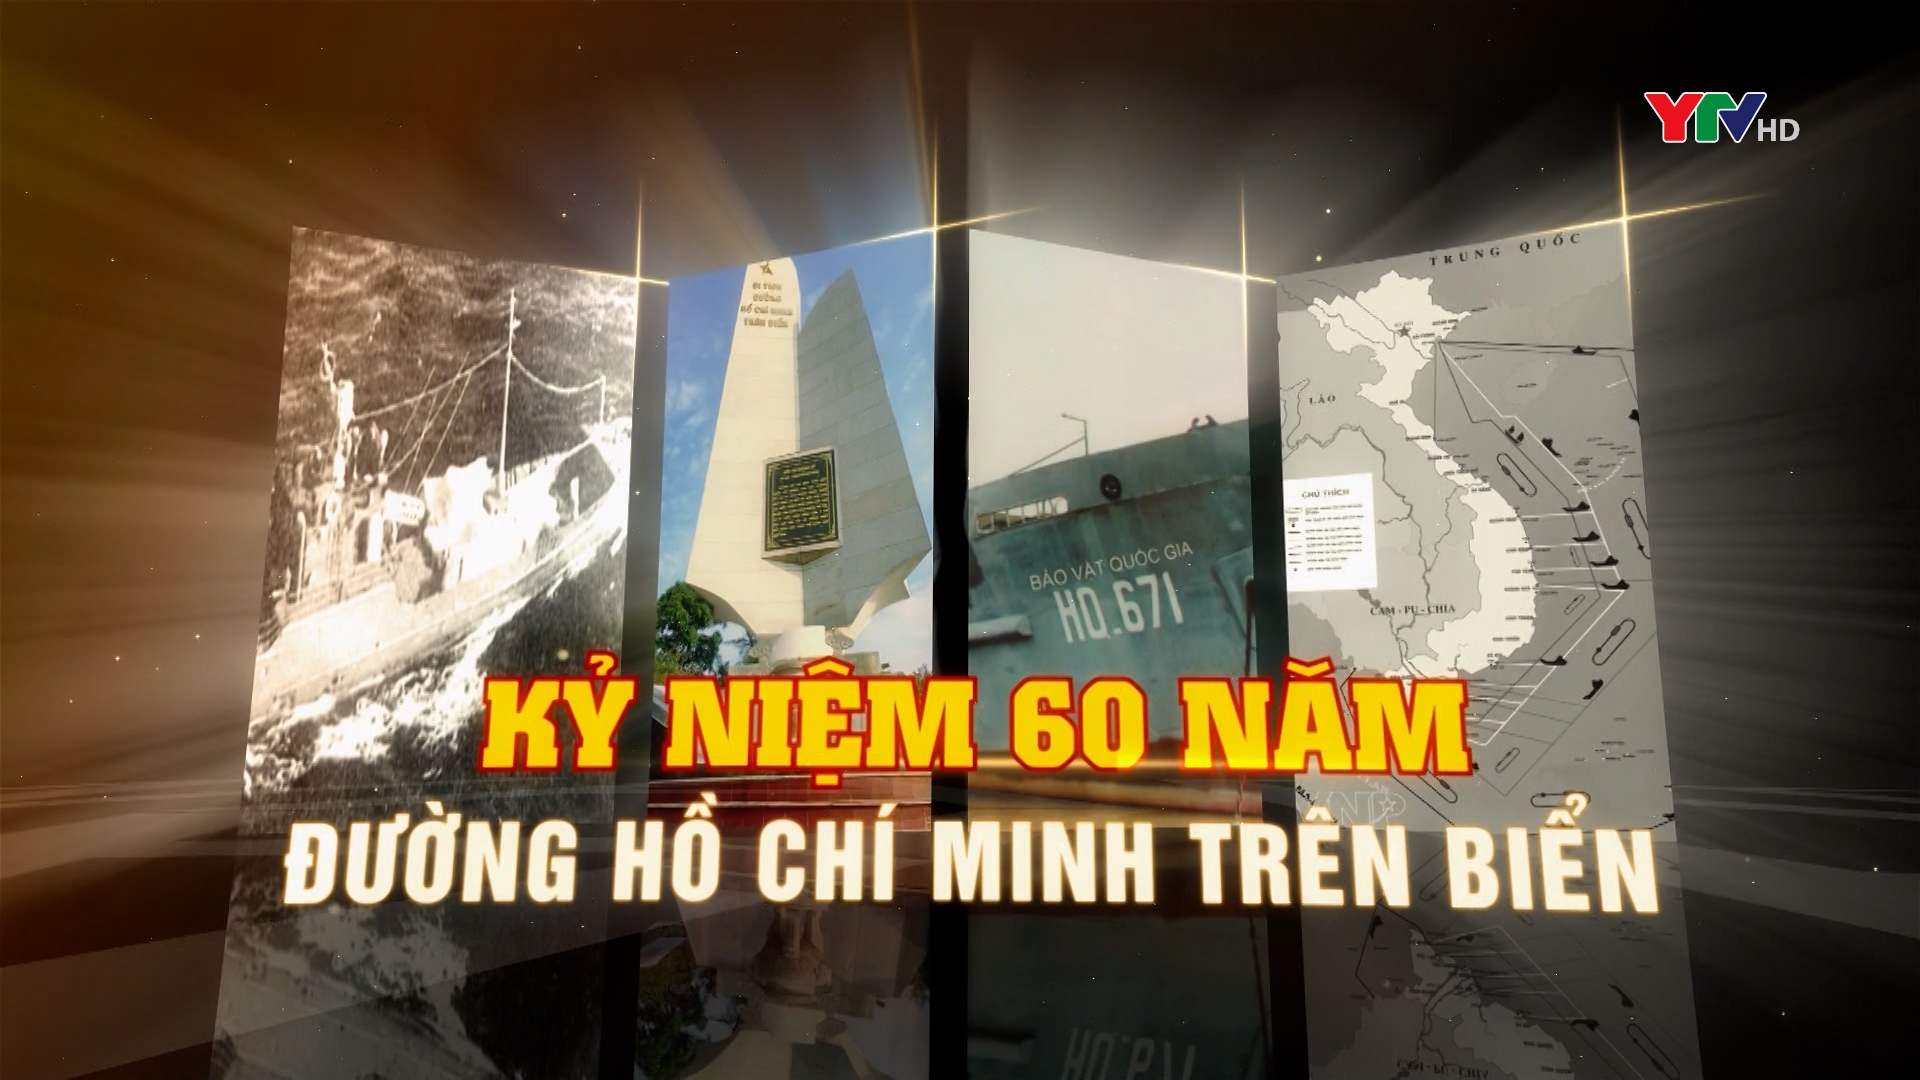 Đường Hồ Chí Minh trên biển góp phần quyết định thắng lợi cuộc kháng chiến chống Mỹ cứu nước